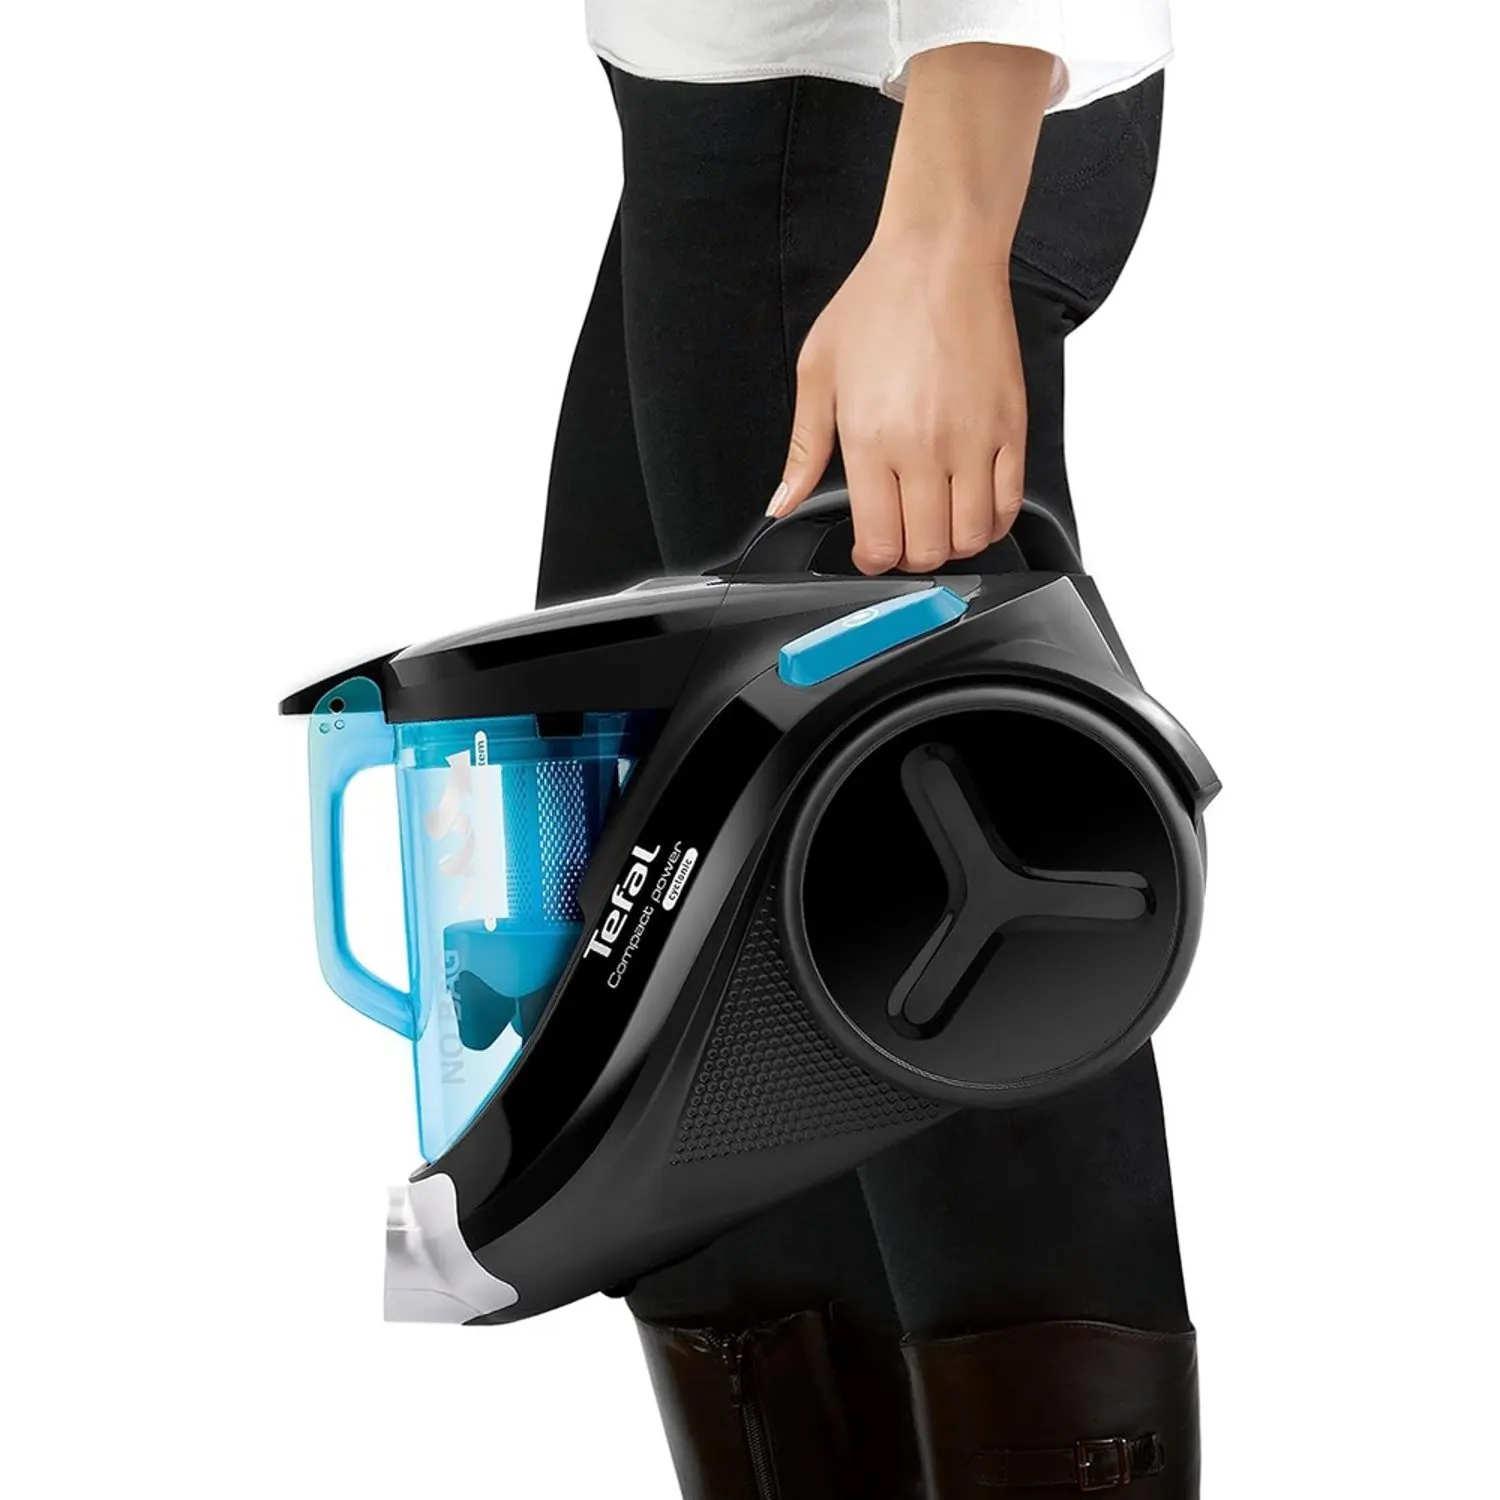 Tefal Bagless Vacuum Cleaner, 750 Watt, 1.5 Liter, Blue, TW3751EG